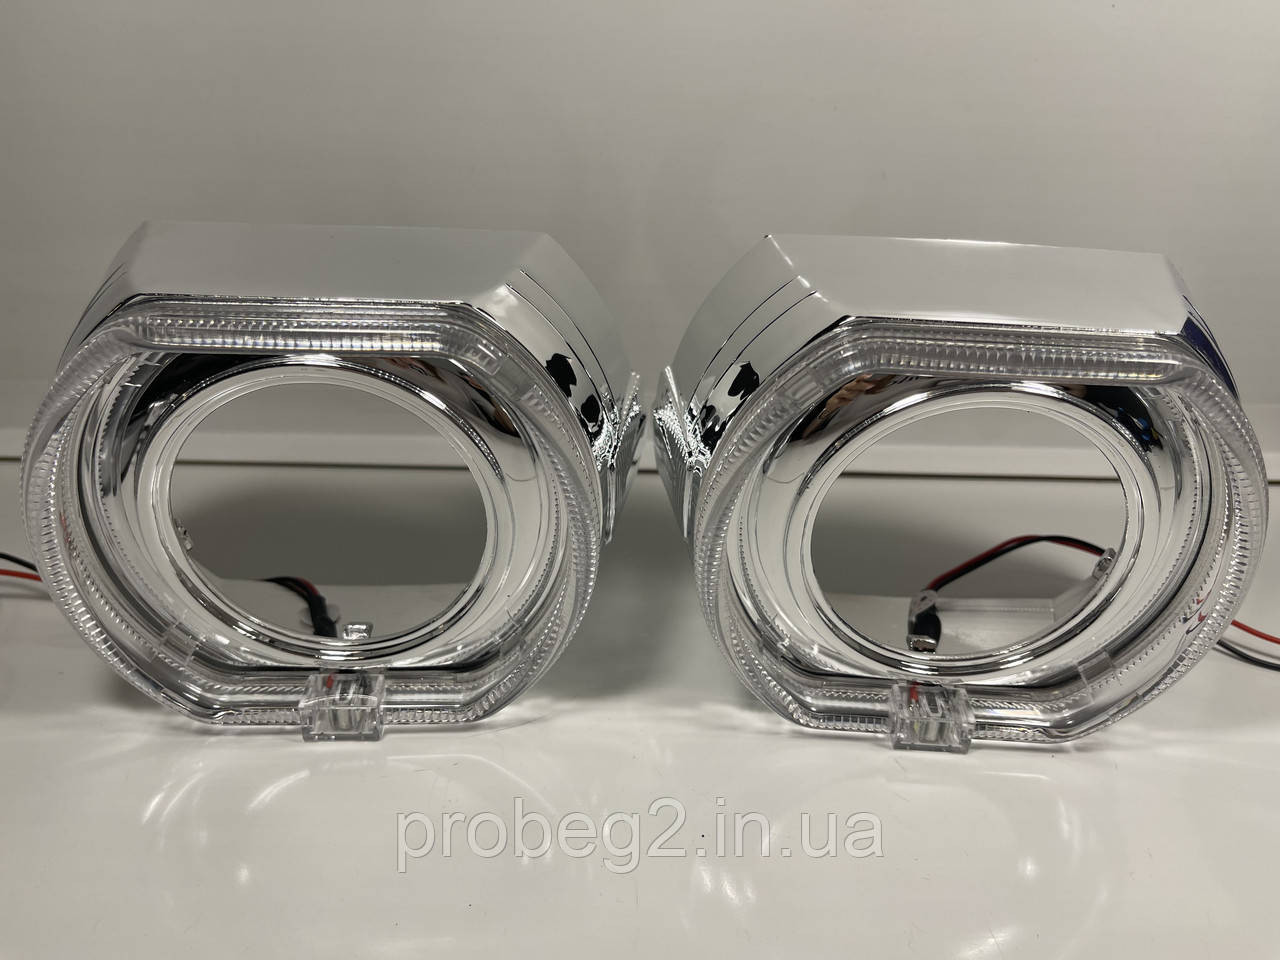 Маски для лінз 3.0 BMV-стиль хром із білими led ангельськими очками 2 шт., фото 1